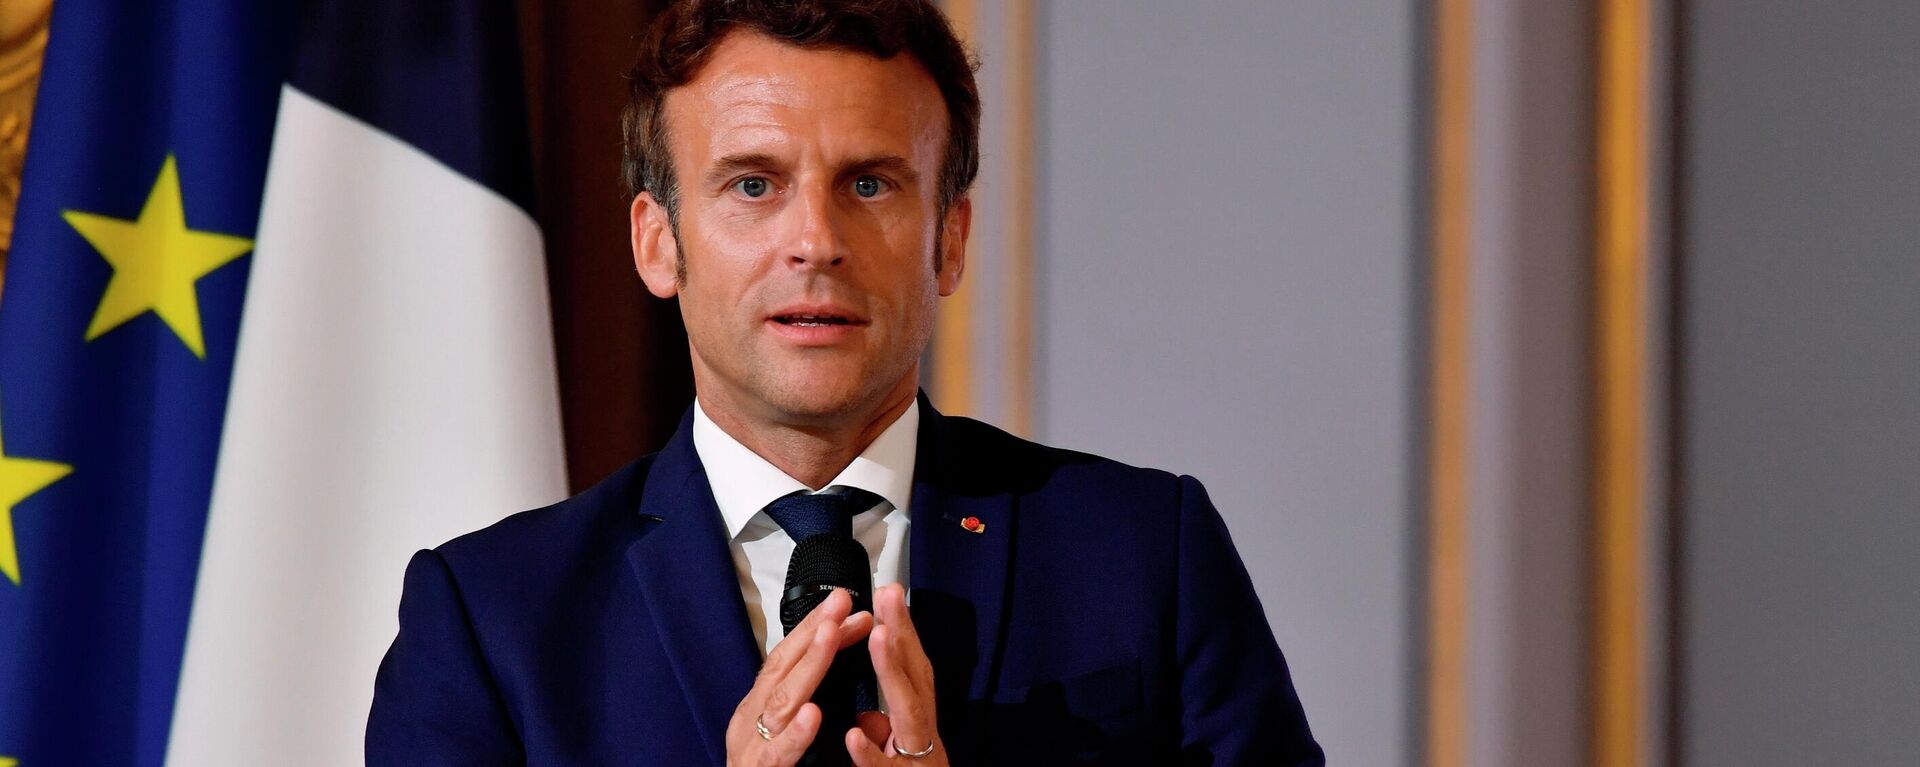 O presidente francês, Emmanuel Macron, participa de encontro no Palácio do Eliseu, em Paris, em 3 de junho de 2022 - Sputnik Brasil, 1920, 29.07.2022